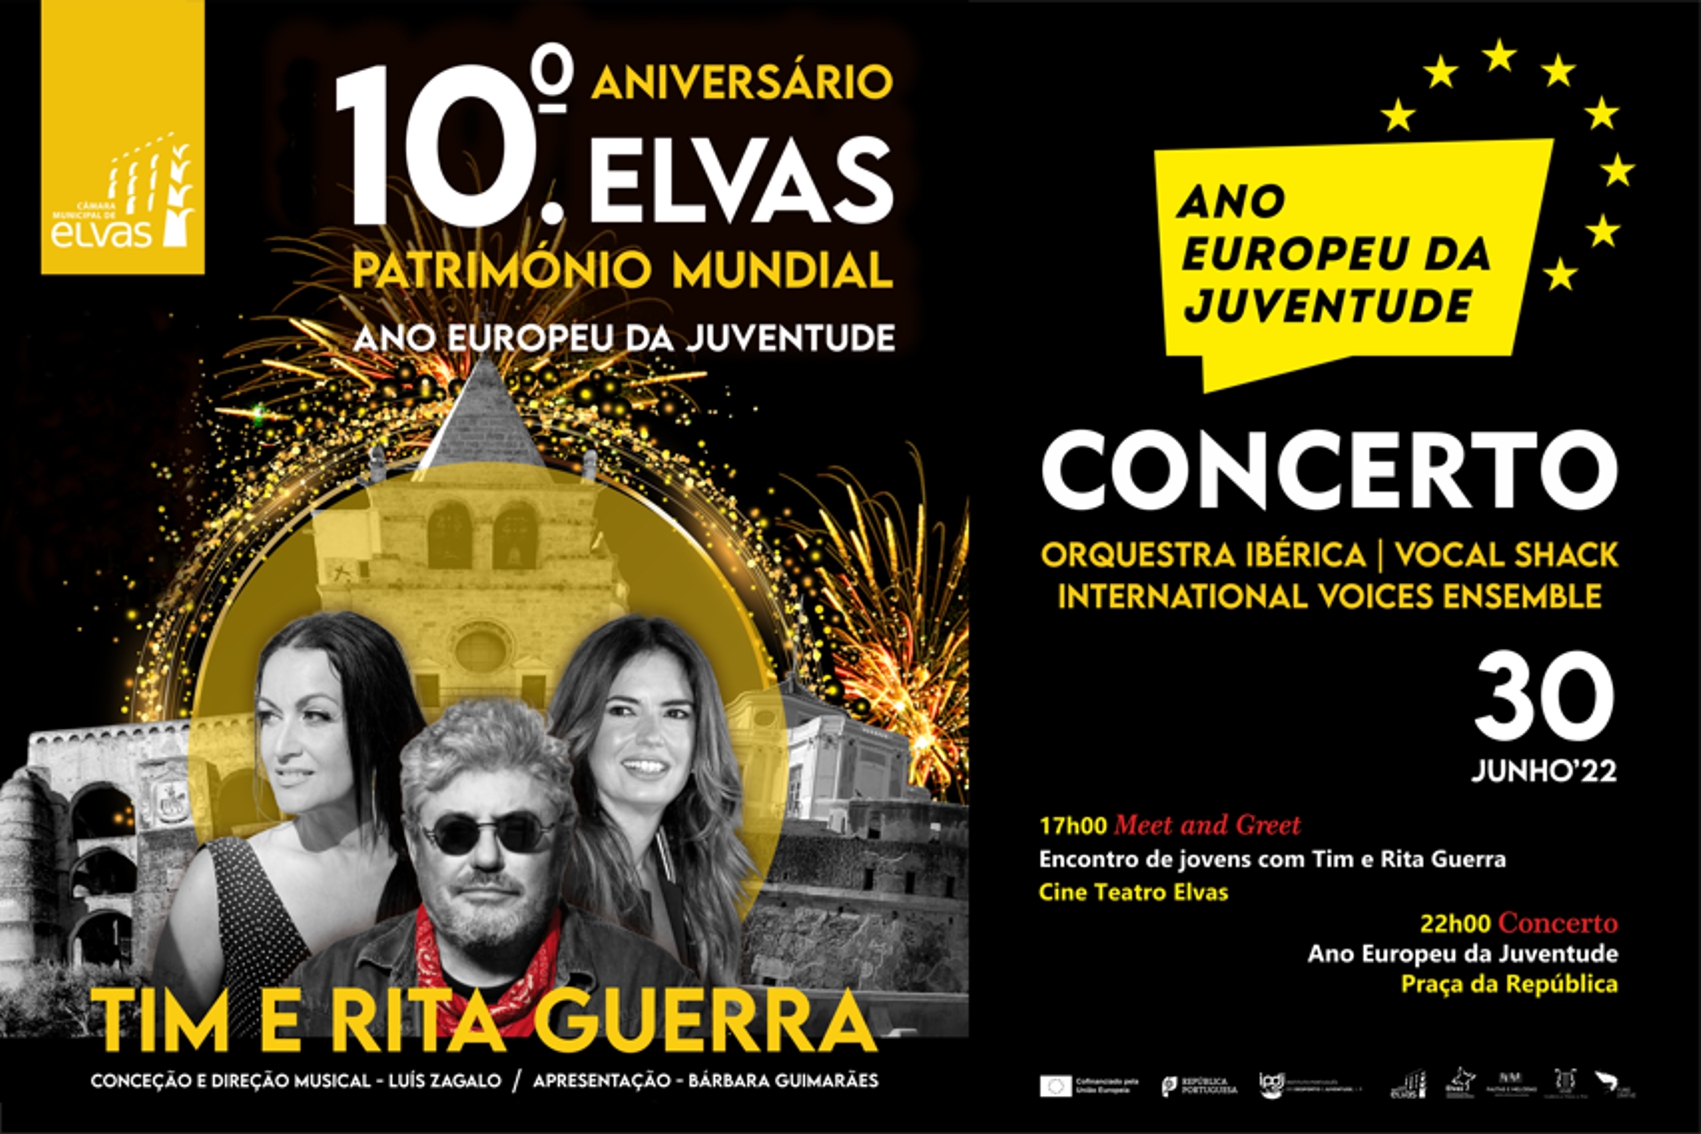 Cartaz com fundo preto e letras amarelas, imagens de monumentos da cidade de Elvas, e fotografias de Rita Guerra, Tim e Bárbara Guimarães.